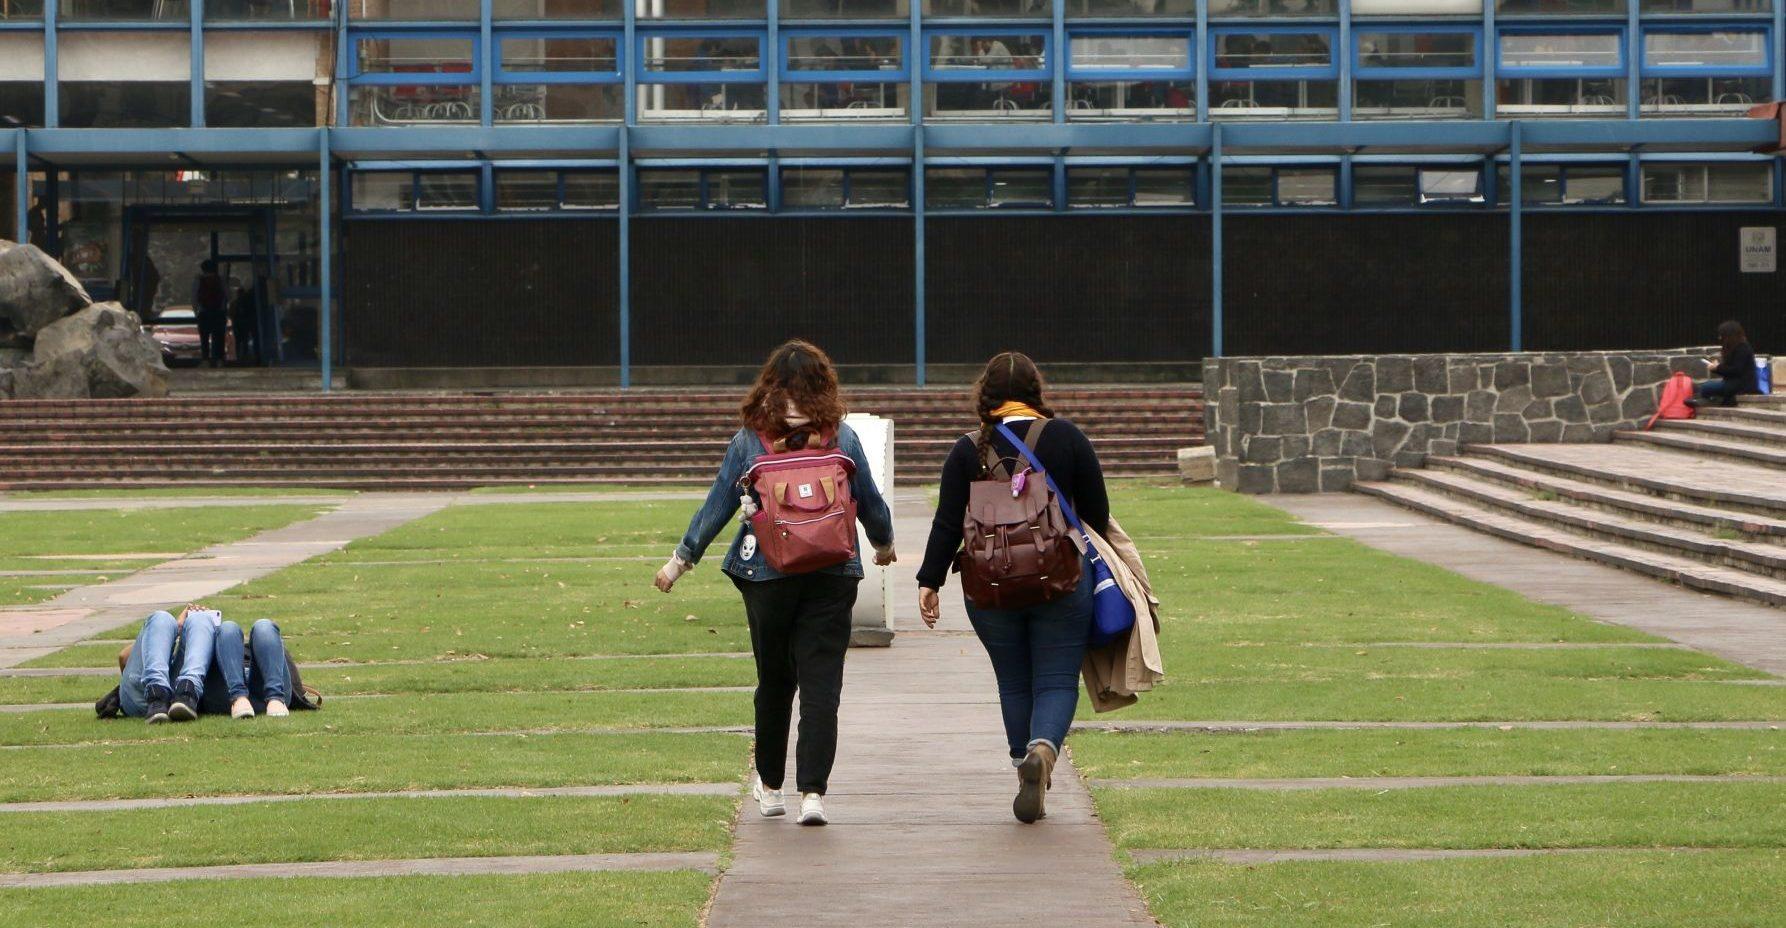 Con Ley Olimpia, alumna de la UNAM logra que un estudiante que le tomó fotos fuera vinculado a proceso